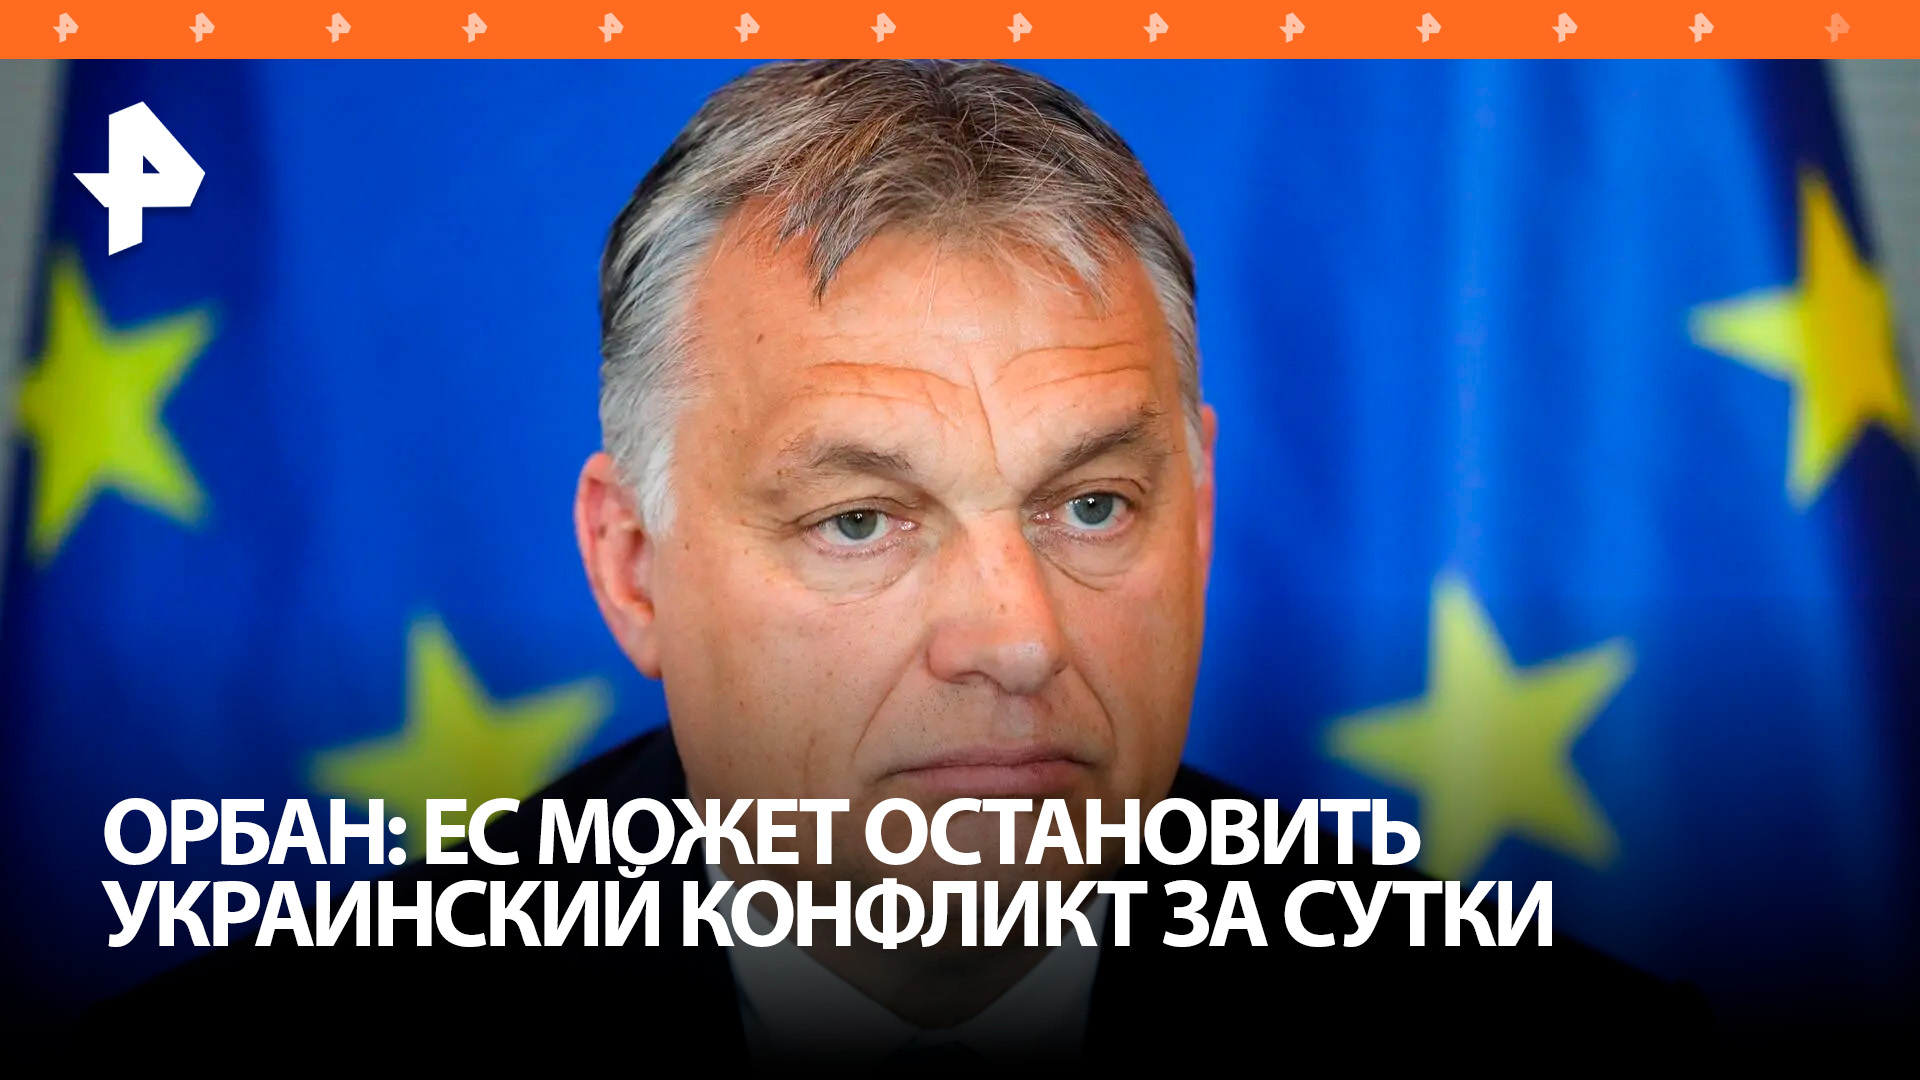 Орбан: Брюссель мог бы остановить конфликт на Украине за сутки / РЕН Новости